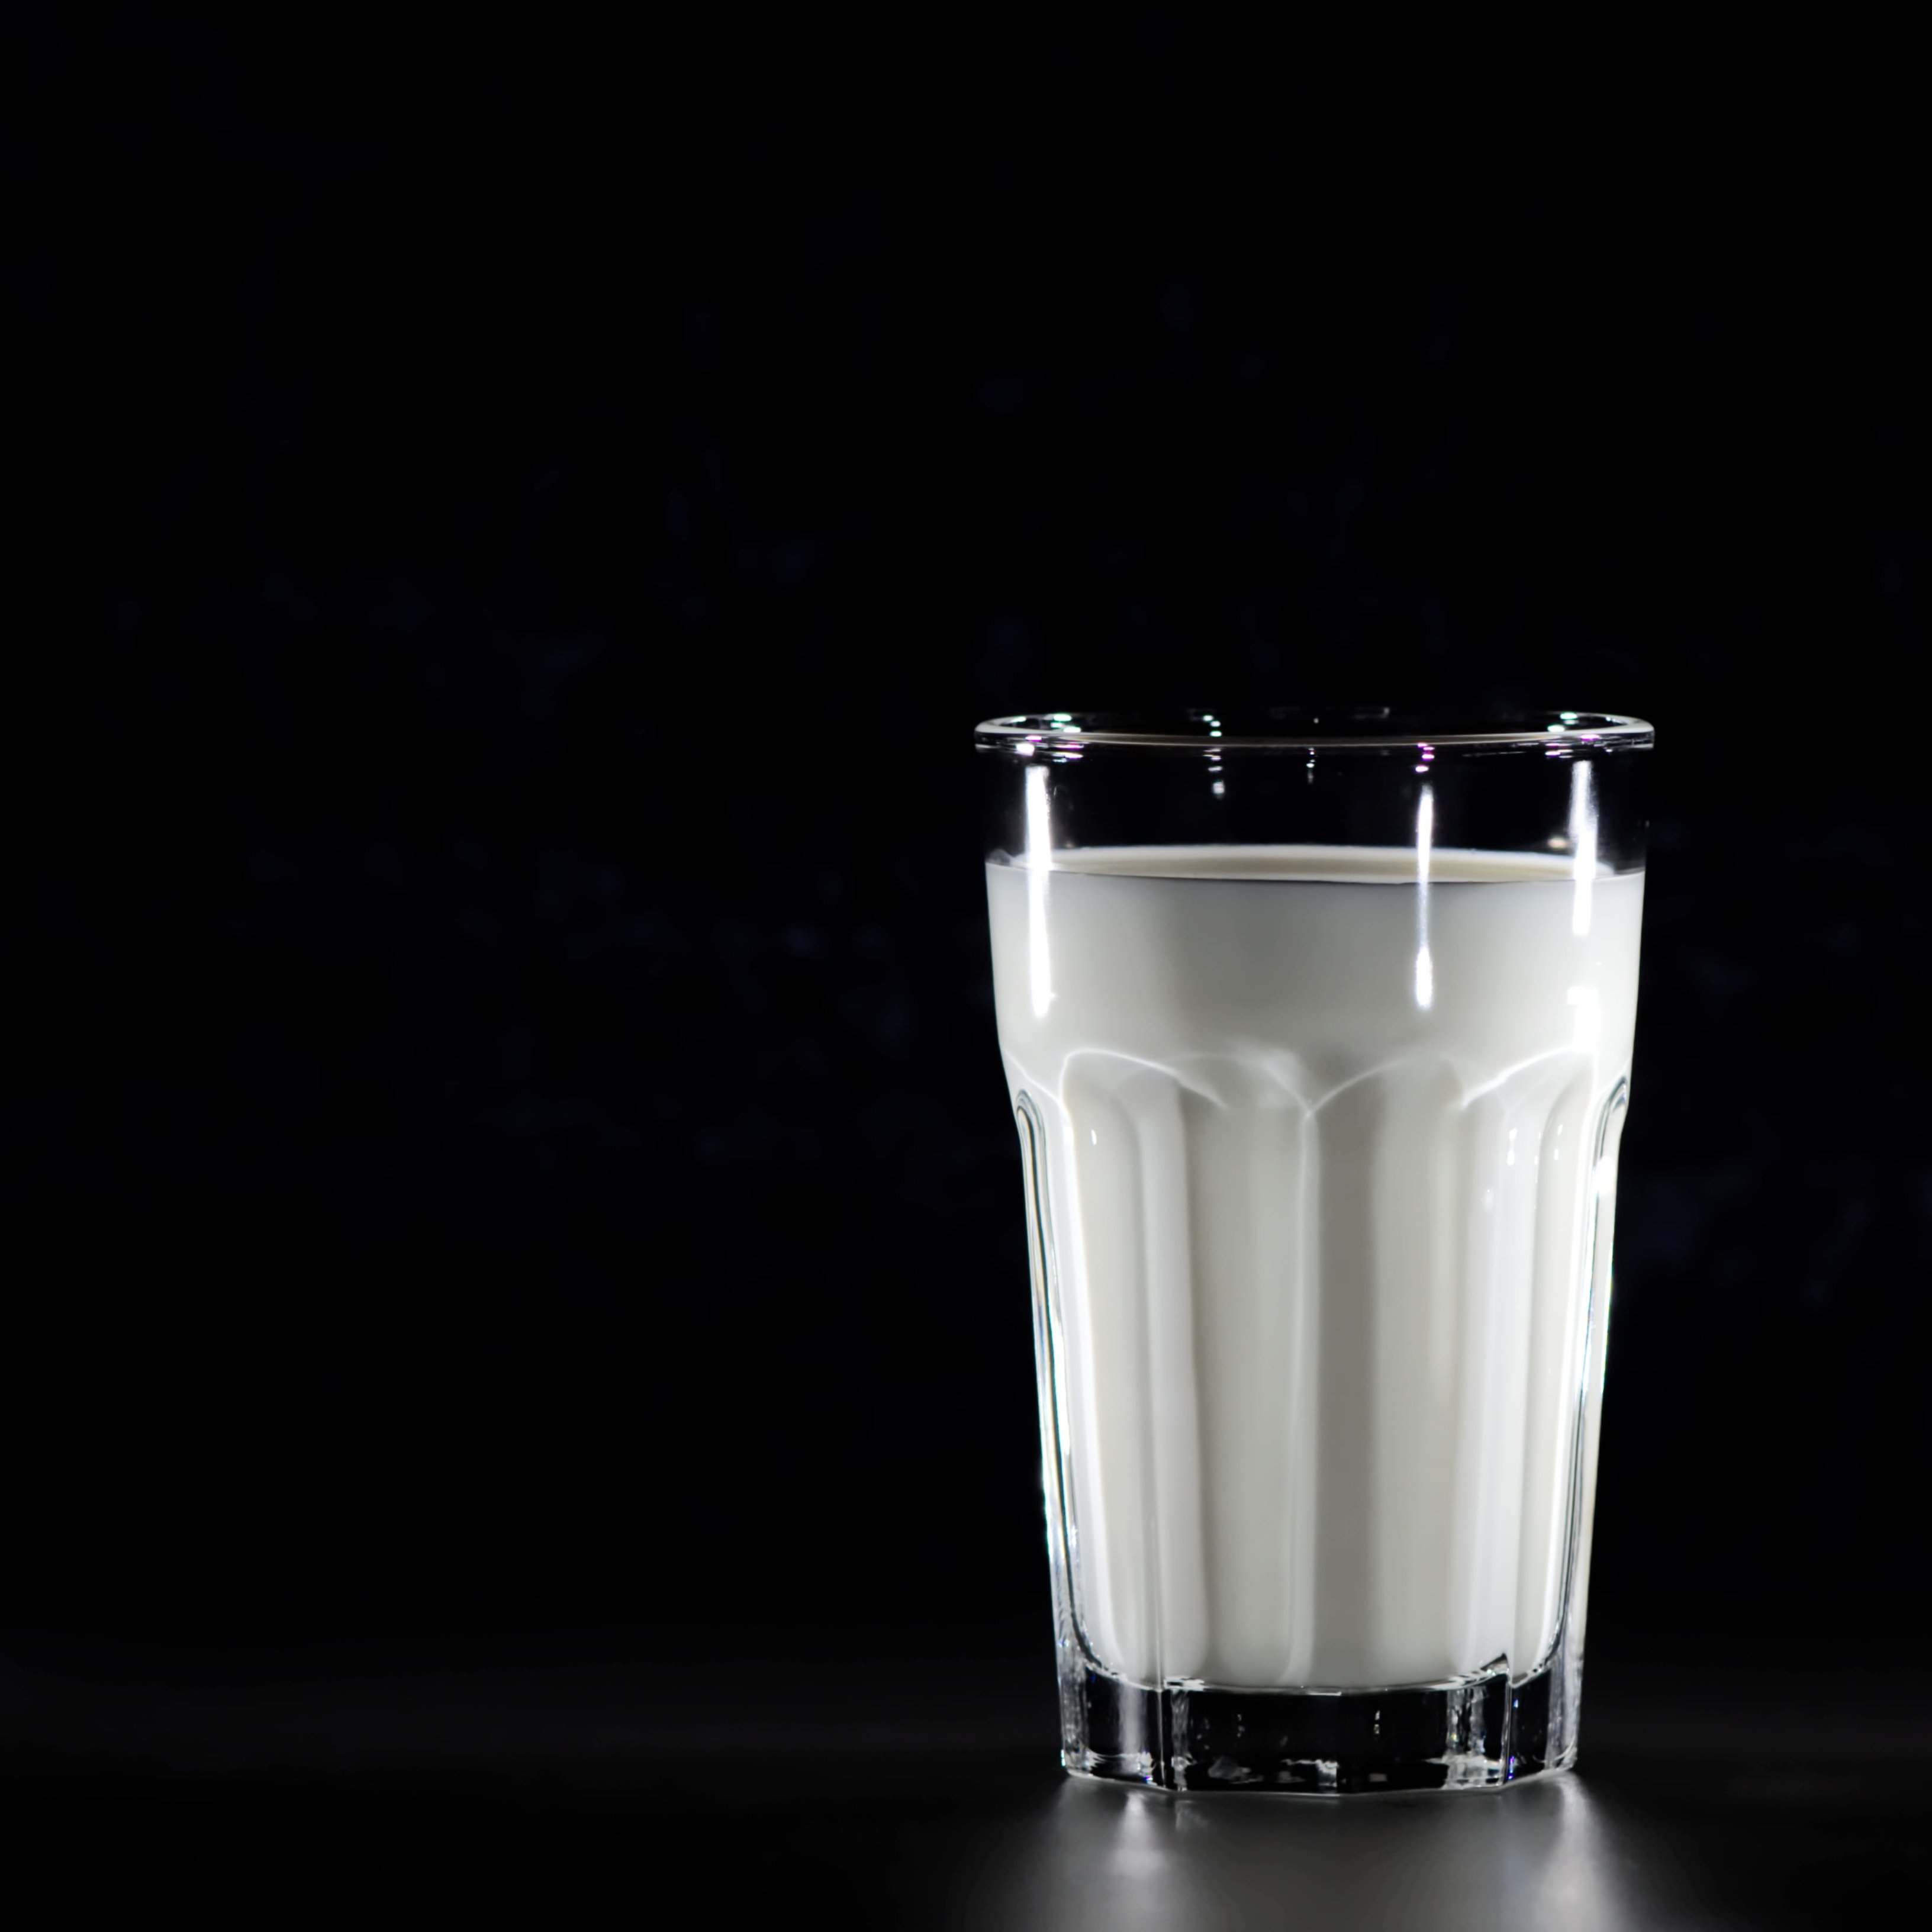 Quina llet és millor per als nens, la sencera o la desnatada